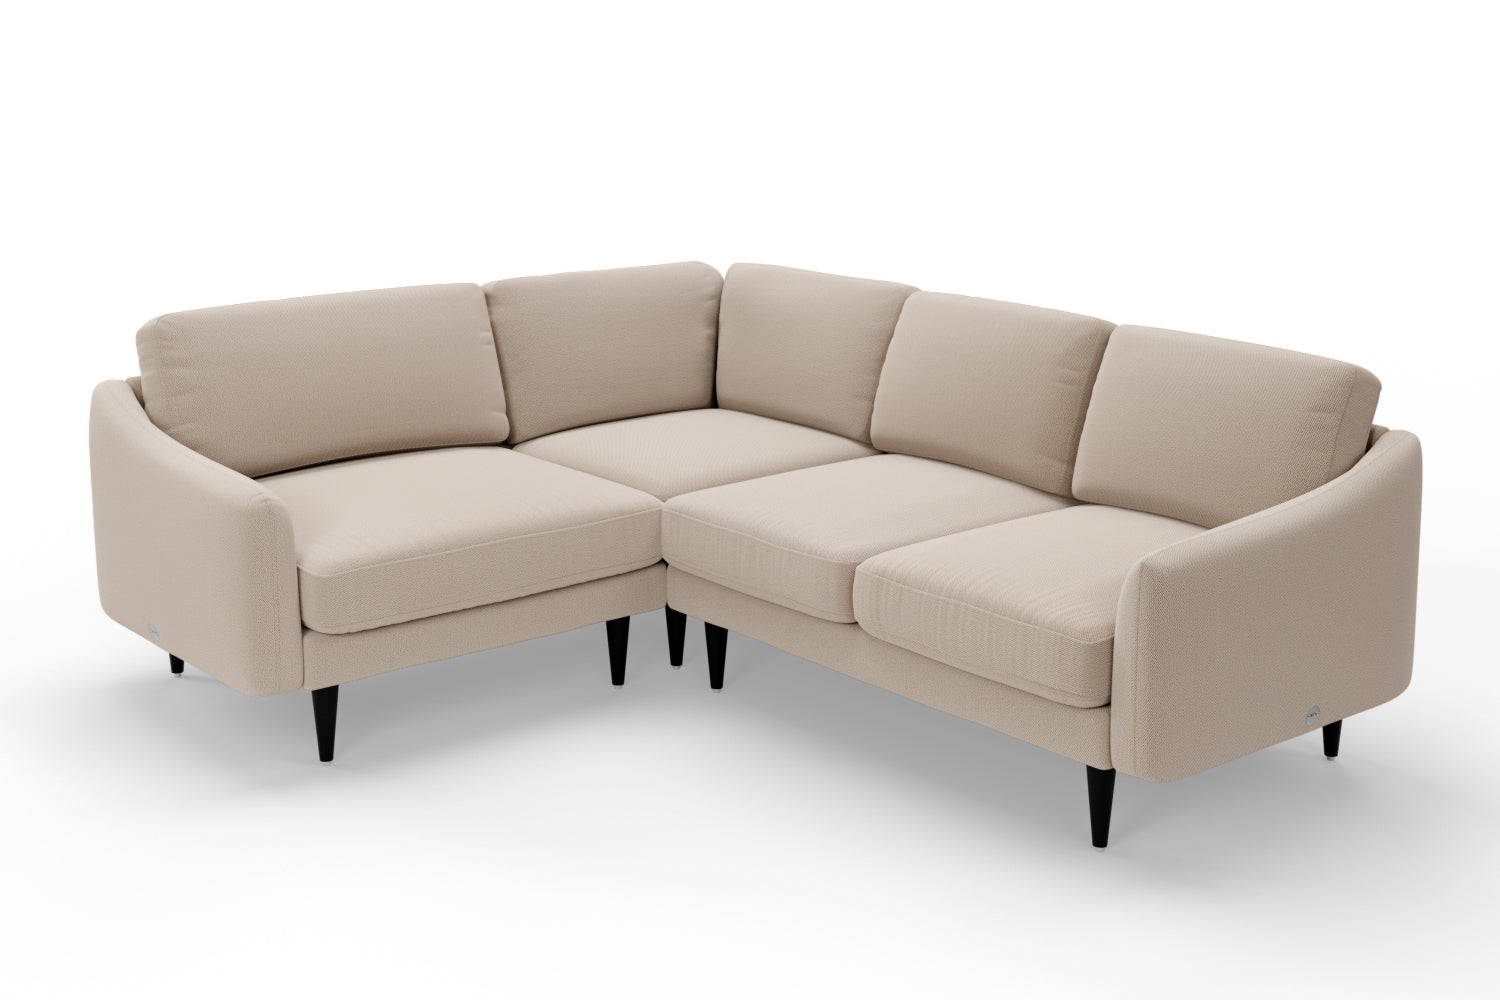 SNUG | The Rebel Corner Sofa Small in Oatmeal